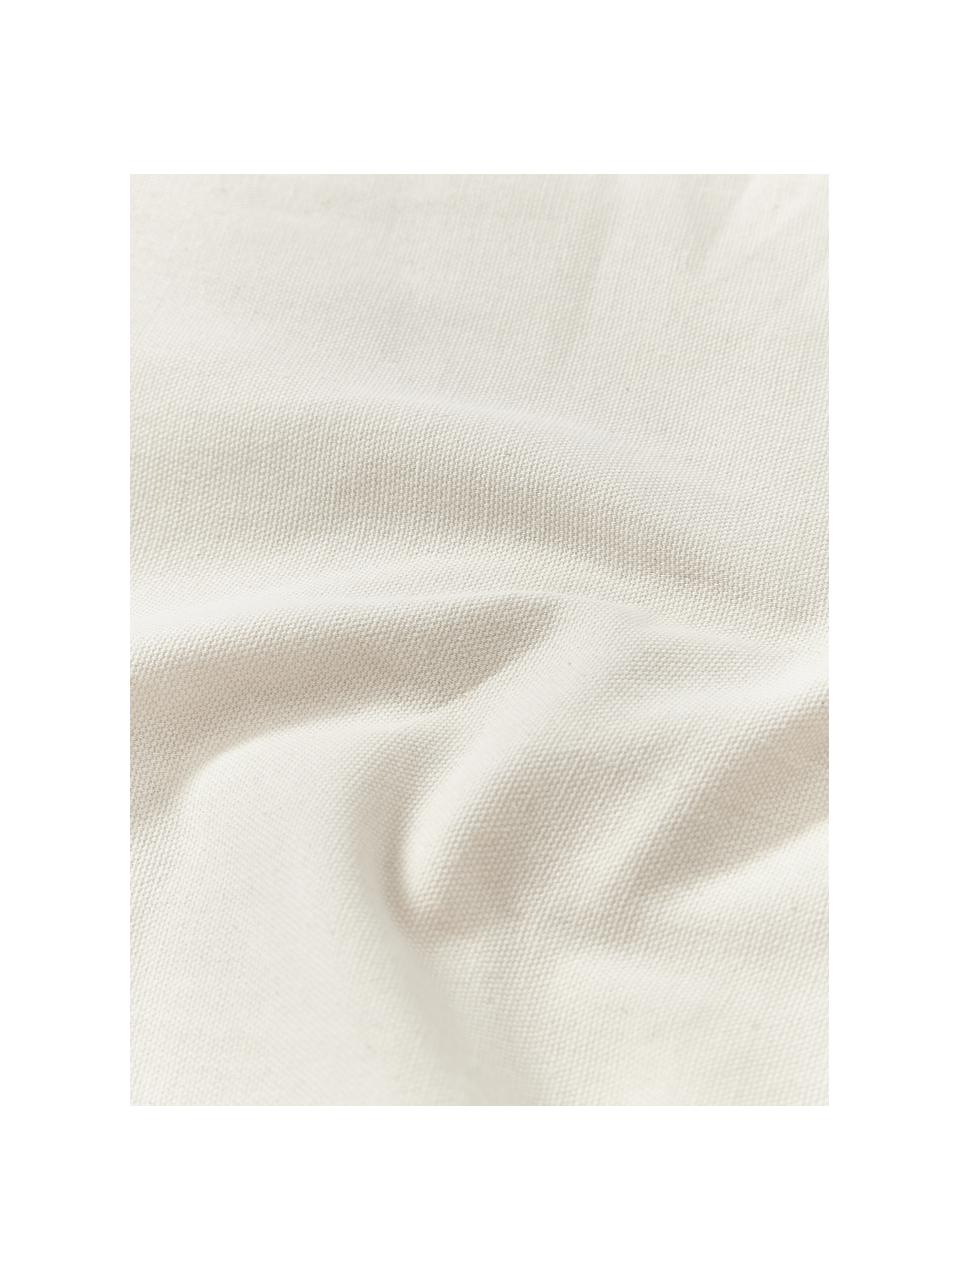 Baumwoll-Kissenhülle Sela mit getuftetem Pflanzen-Motiv, 100 % Baumwolle, Grün, Cremeweiss, B 45 x L 45 cm